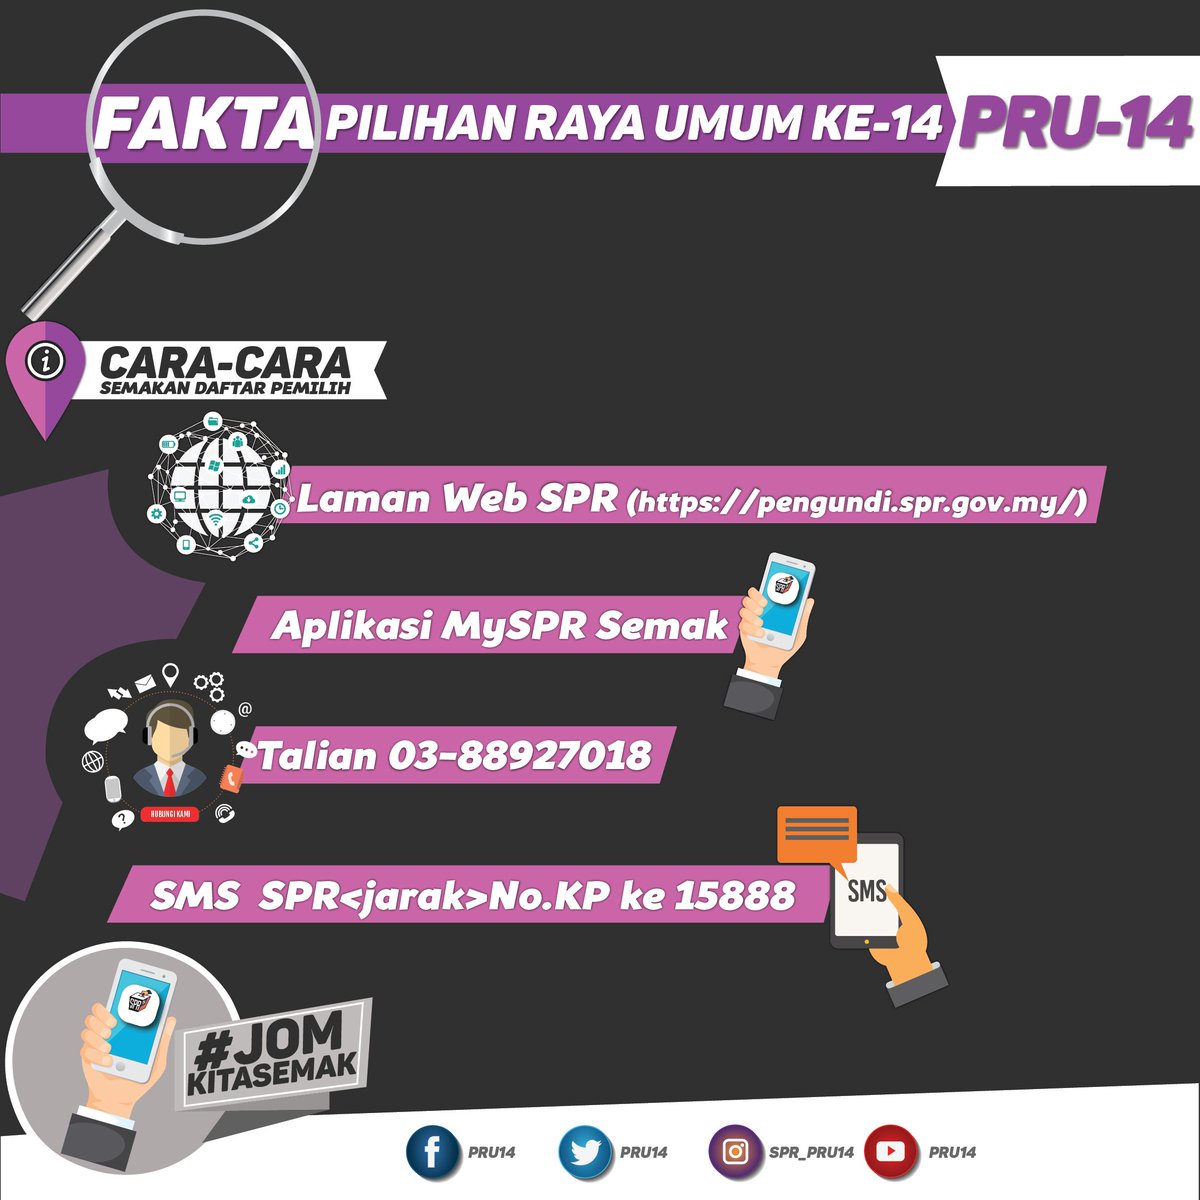 Suruhanjaya Pilihan Raya Malaysia On Twitter Info Pru 14 Semakan Daftar Pemilih Anda Sudah Semak Kalau Masih Ada Yang Belum Semak Tu Apa Kata Anda Lakukan Semakan Melalui Cara Cara Yang Kami Senaraikan Infopru14